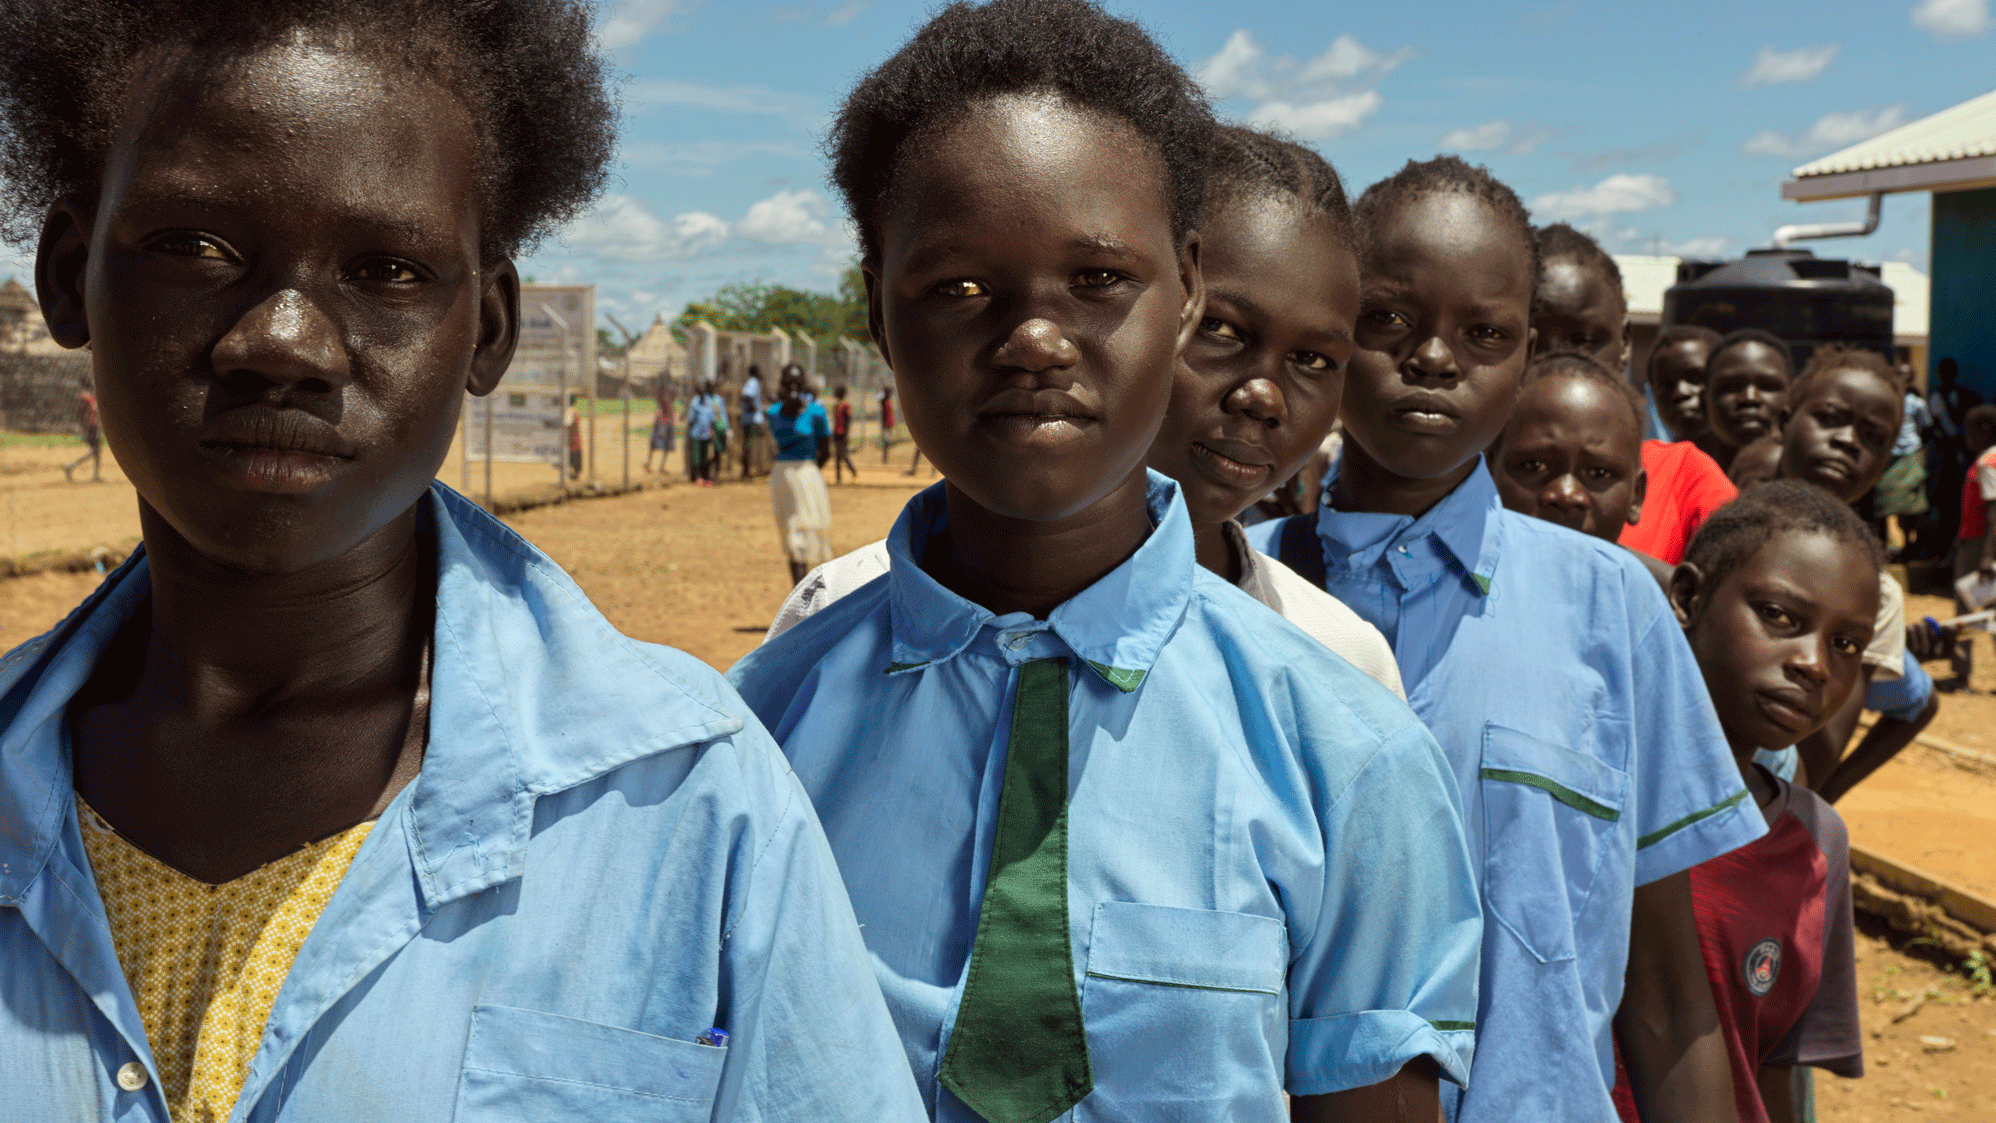 Durch Schulgärten im Südsudan erhalten Schulkinder gesunde Mahlzeiten, können ungestört lernen und aus dem Teufelskreis von mangelnder Bildung, Hunger und lebenslanger Abhängigkeit ausbrechen.